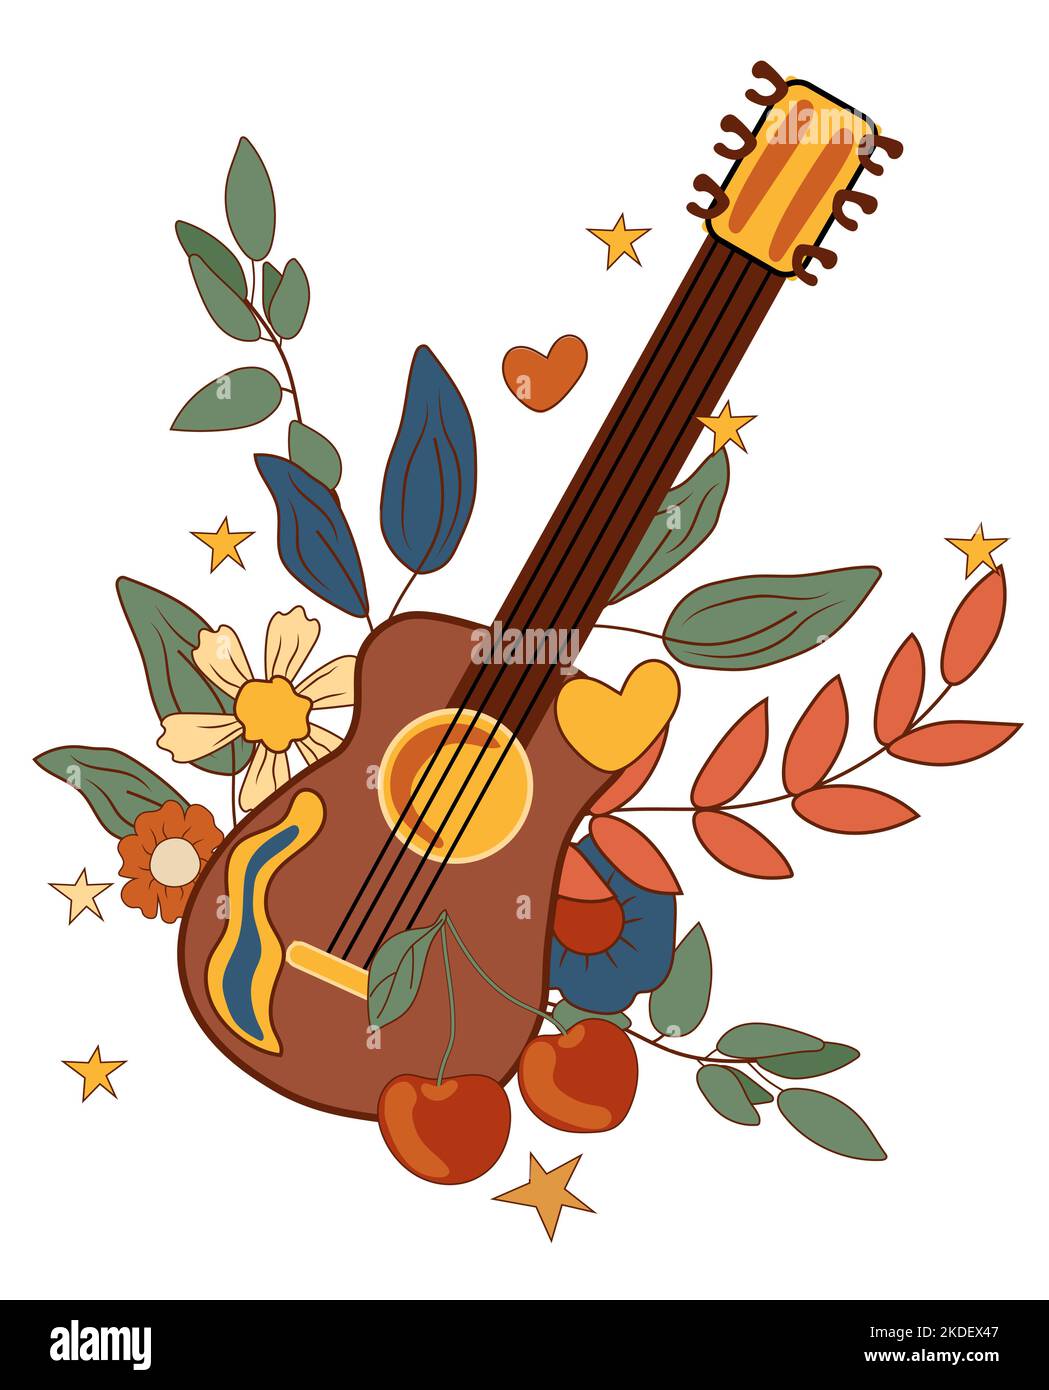 Composizione positiva 70s con chitarra retrò, fiori e foglie colorate, ciliegia, stelle. Simboli psichedelici groovy perfetti per carte, poster, cartoline, banner. Vettore. Illustrazione Vettoriale